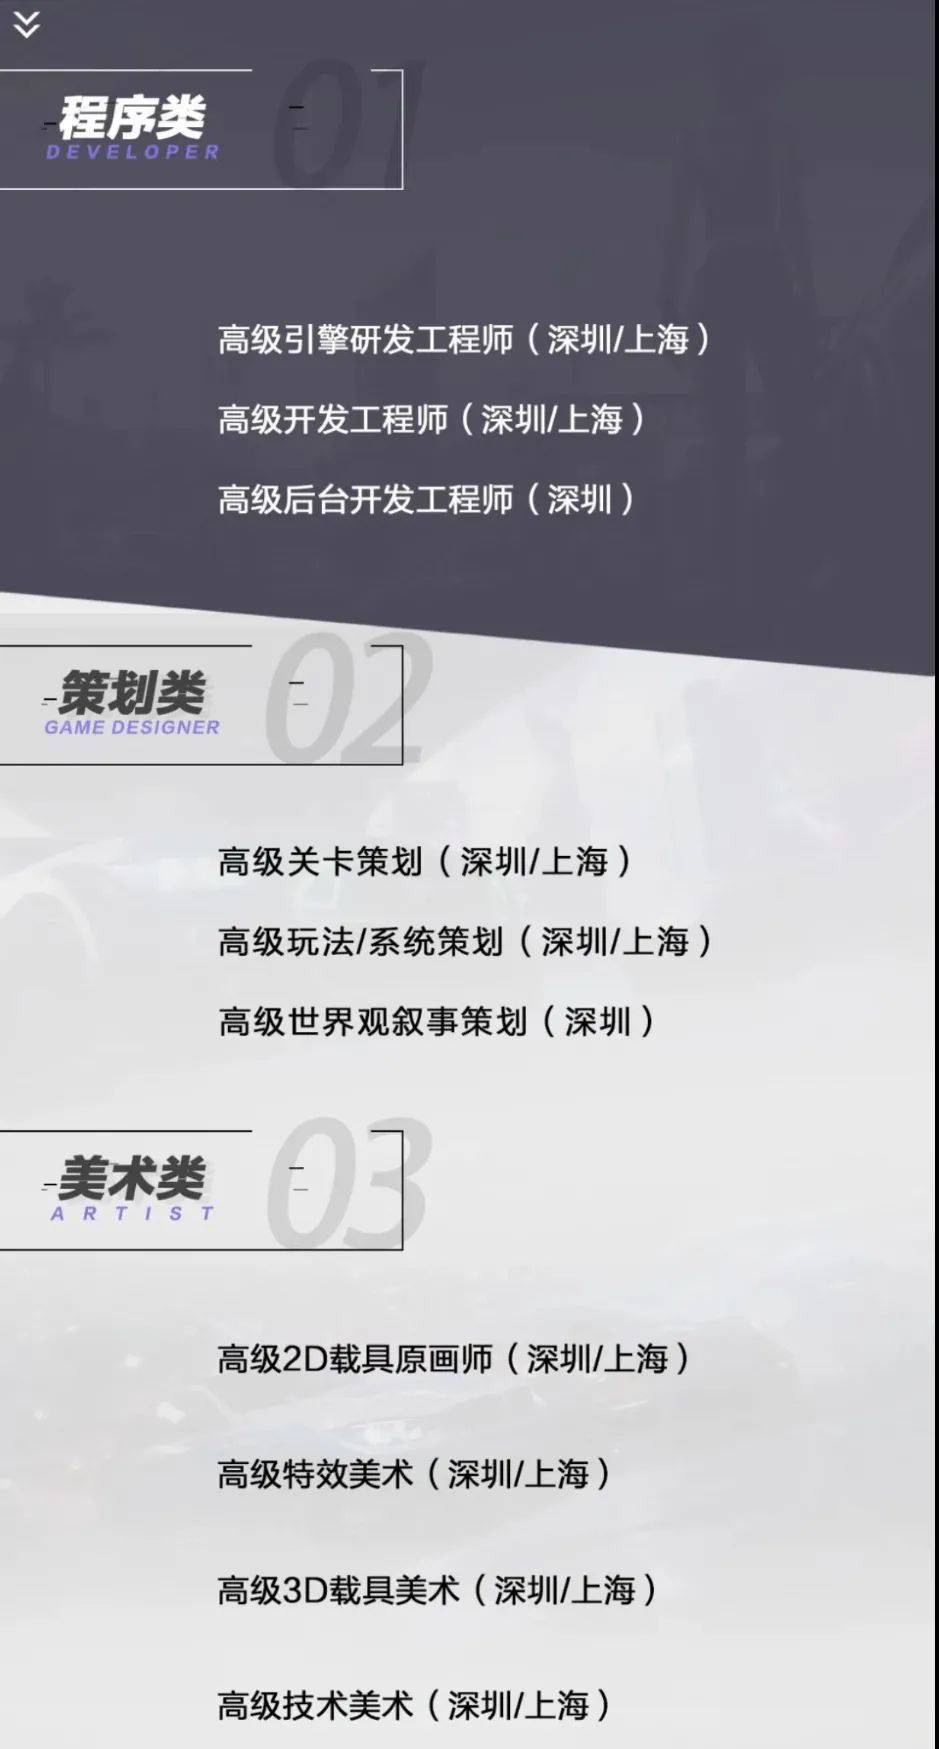 天美J1一款UE4手游的招聘岗位，很多都支持深圳/上海<br>